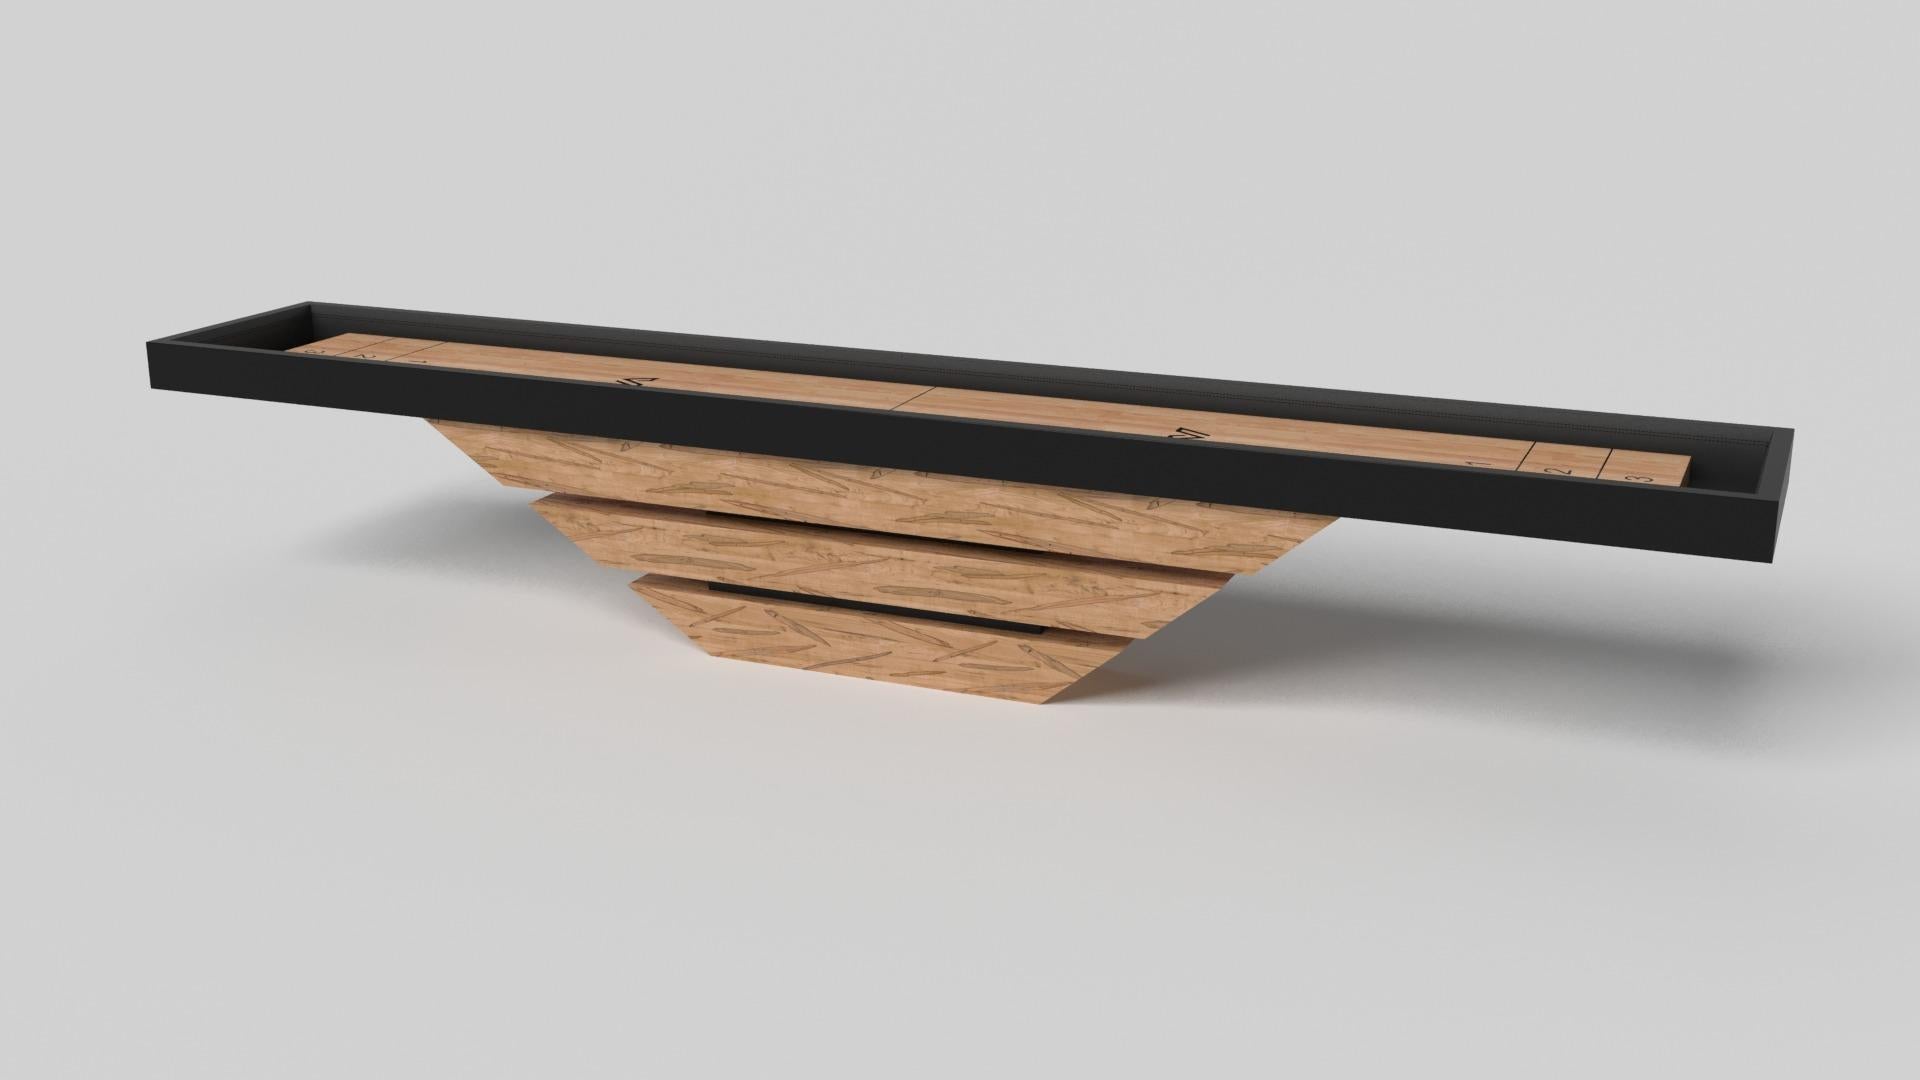 Trois pièces de bois massif semblent flotter autour d'une base centrale dissimulée, ce qui fait de la table de shuffleboard Louve en chrome l'un de nos designs les plus surprenants. Fabriquée en bois d'érable massif et agrémentée d'une surface en